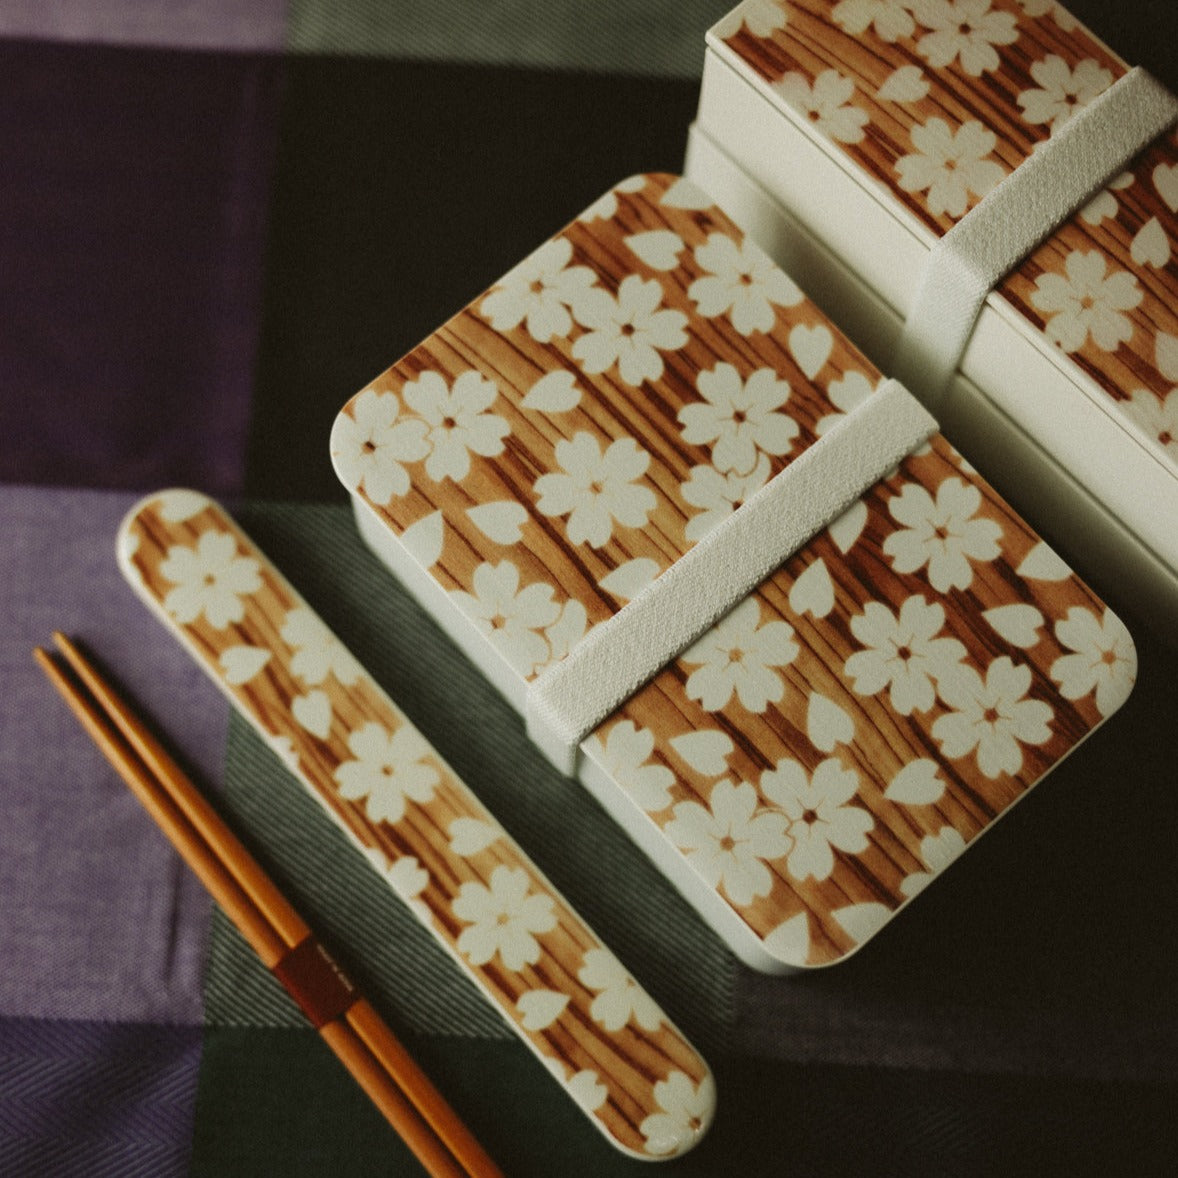 Sakura Mokume One Tier Bento Box | White 600mL